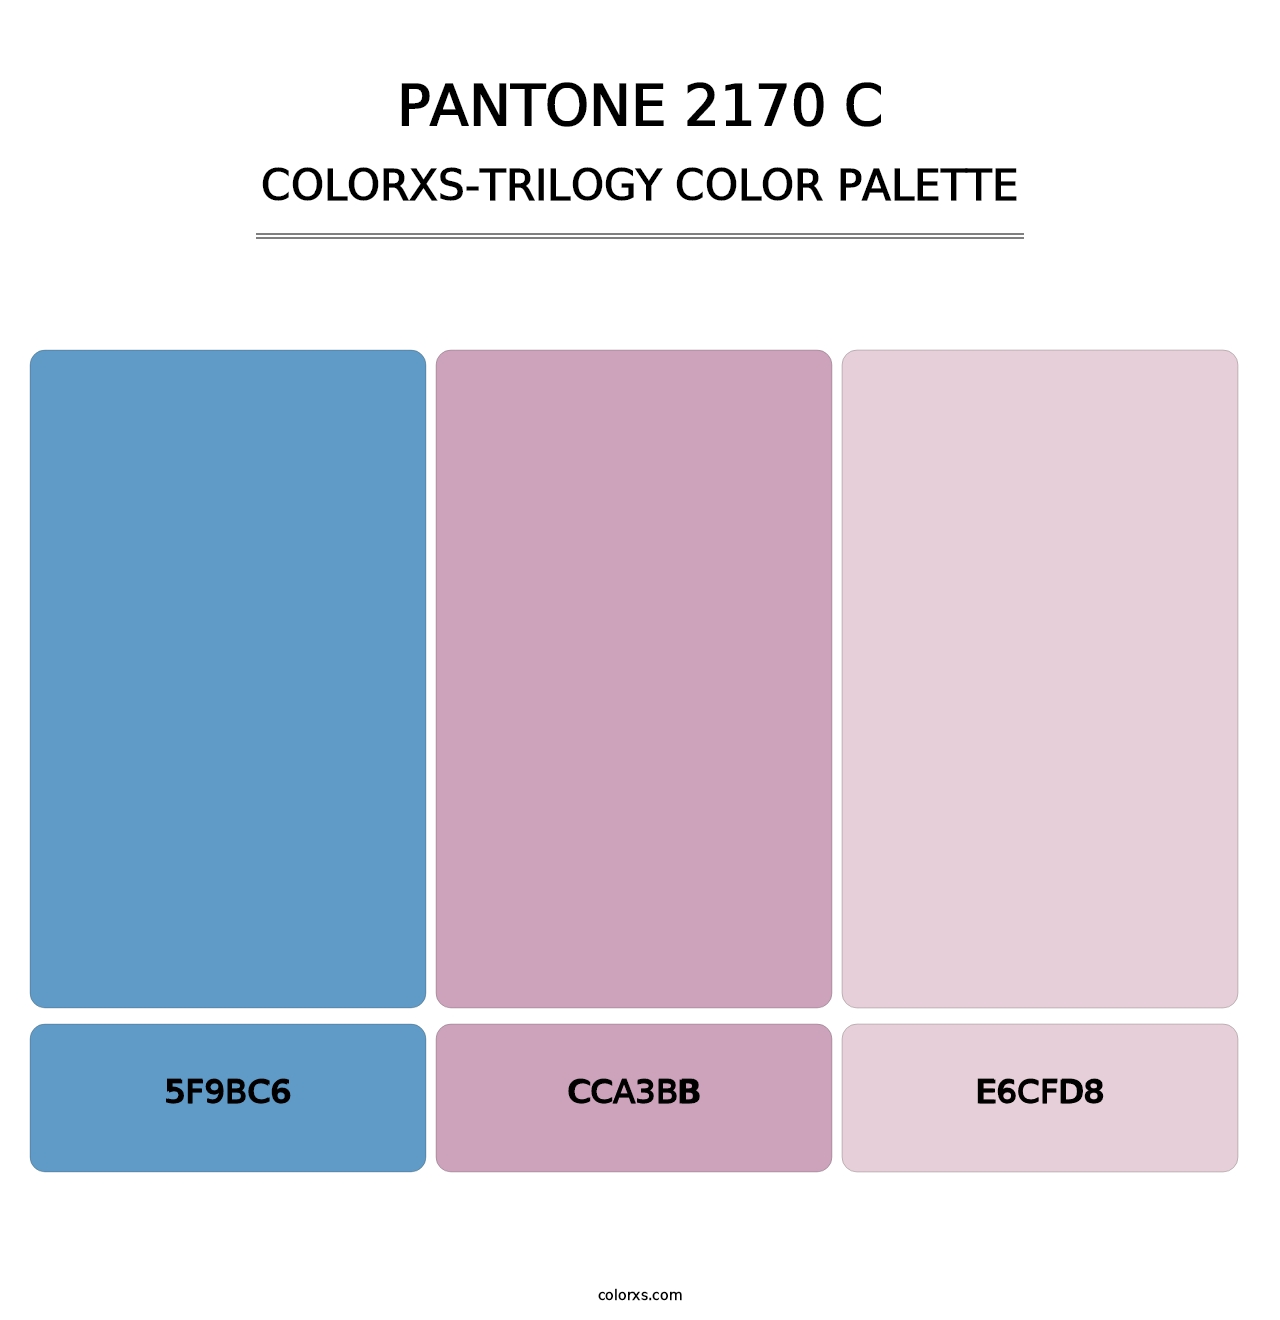 PANTONE 2170 C - Colorxs Trilogy Palette